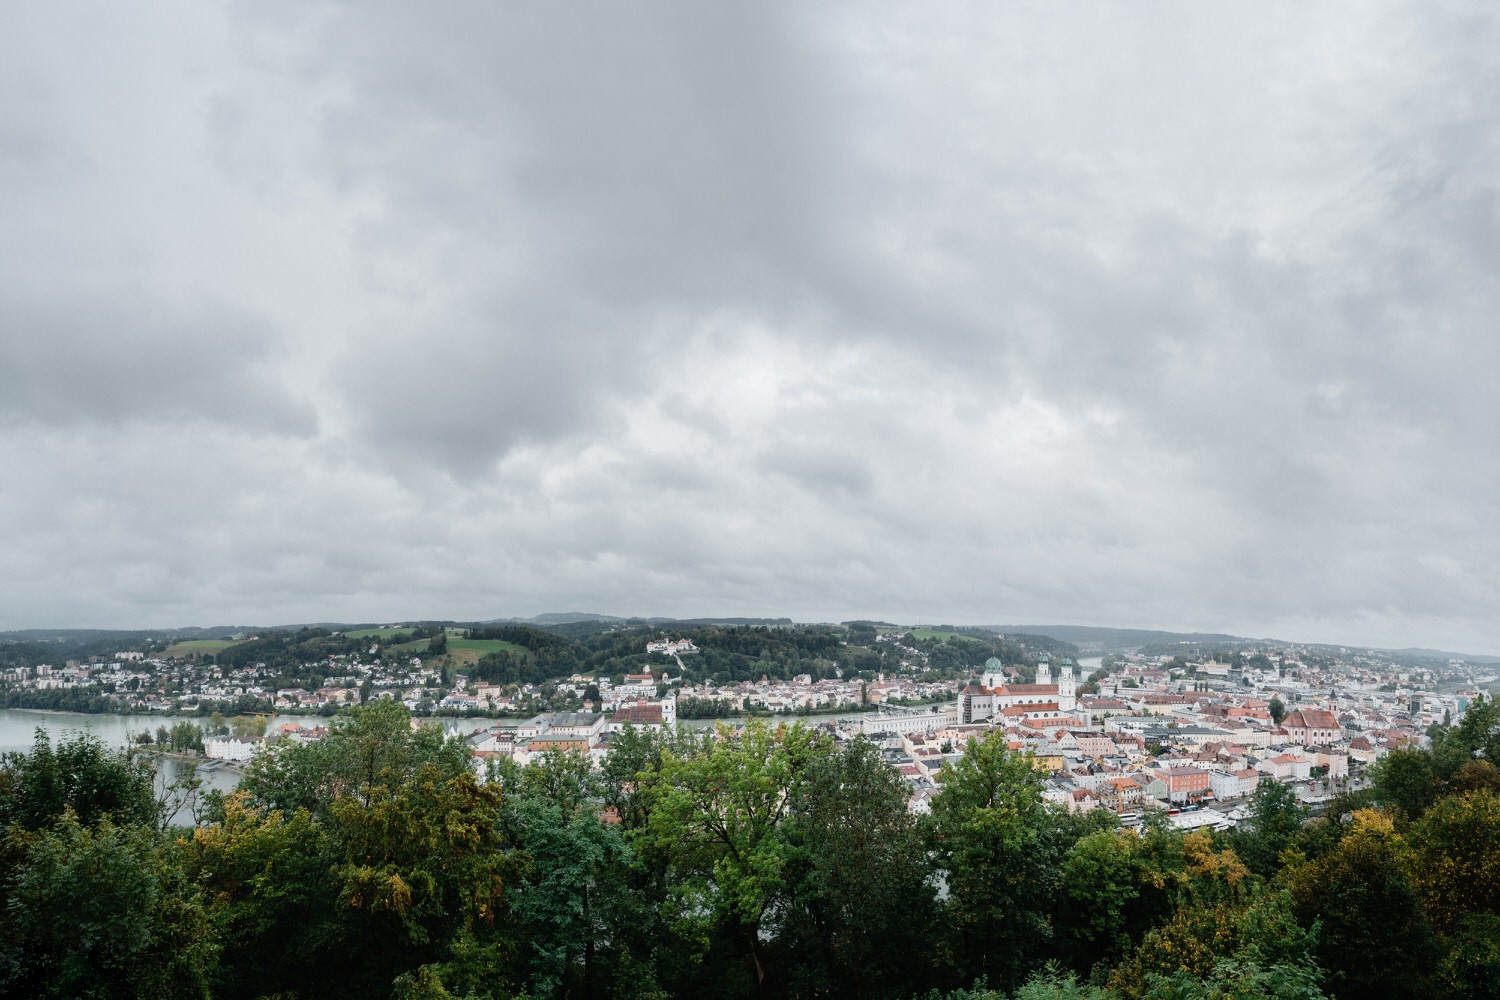 Hochzeit auf der Veste Oberhaus, Paarshooting, Blick auf die Stadt Passau